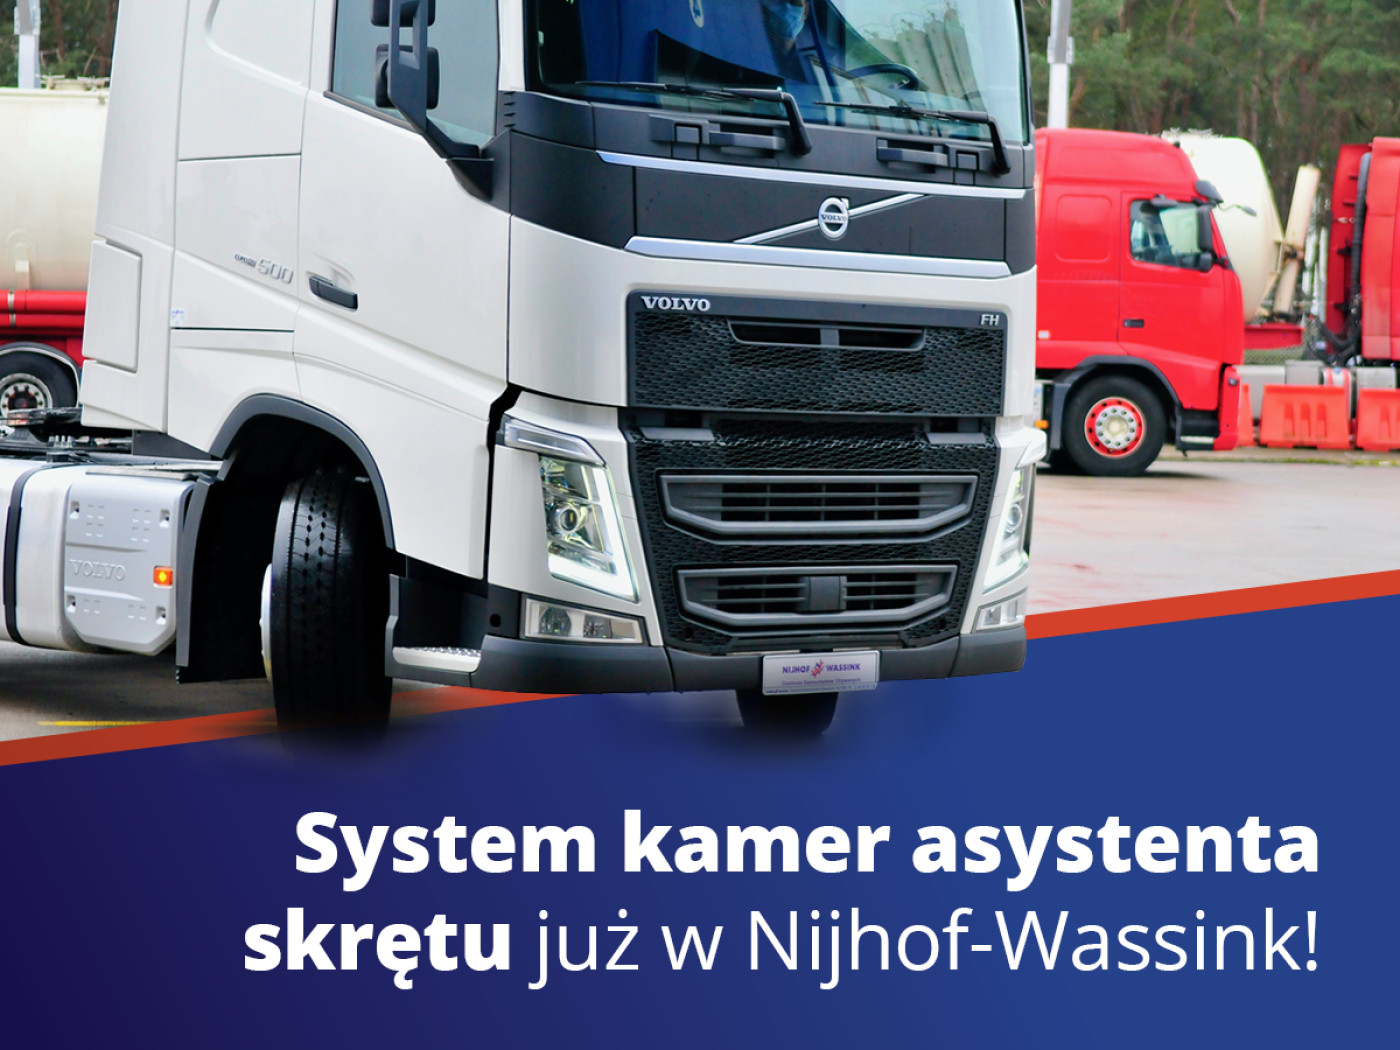 System kamer asystenta skrętu Volvo Trucks już w Nijhof-Wassink!